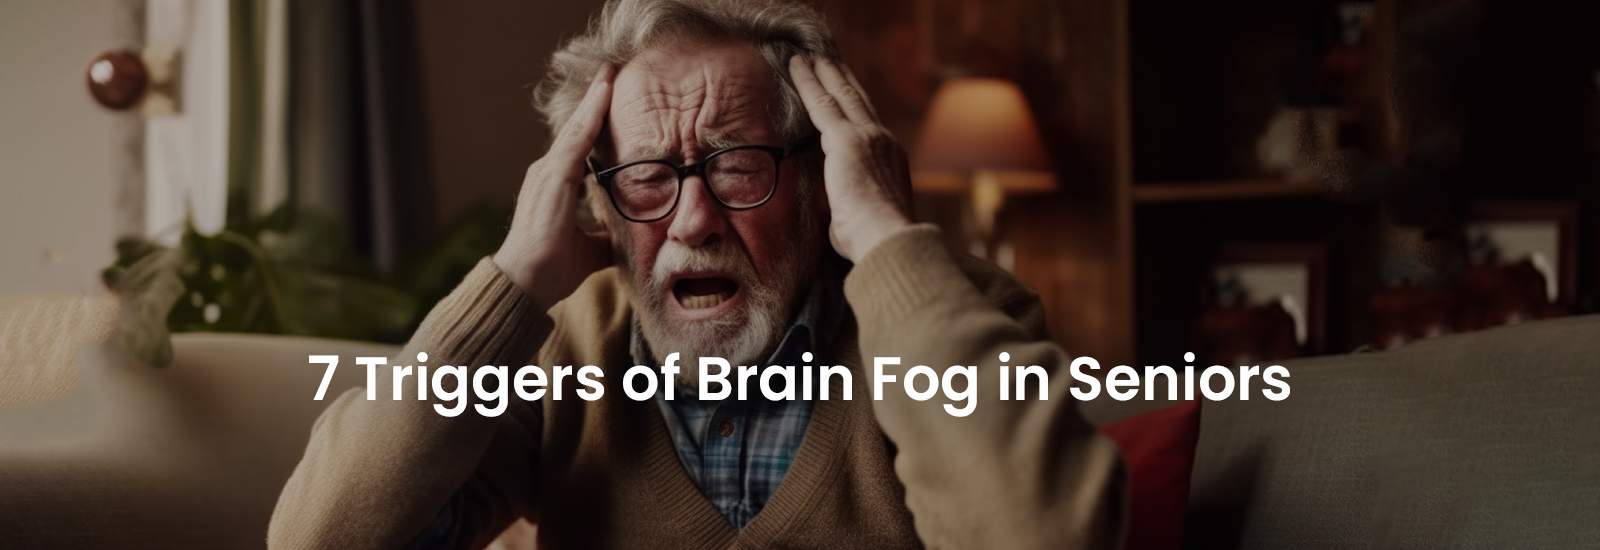 7 Triggers of Brain Fog in Seniors | Banner Image